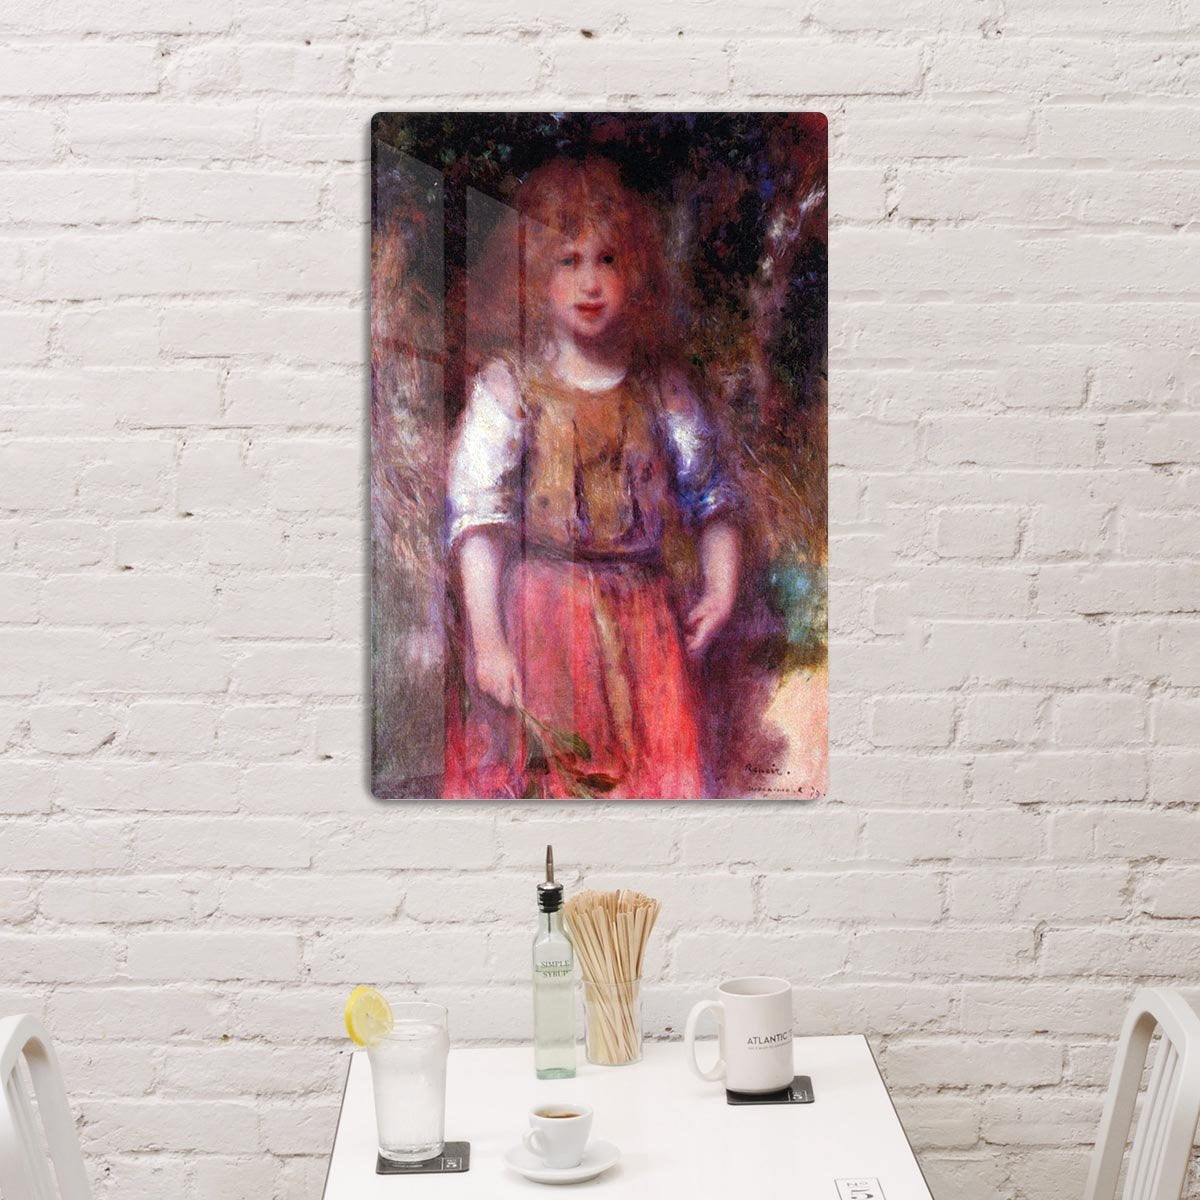 Gypsy girl by Renoir HD Metal Print